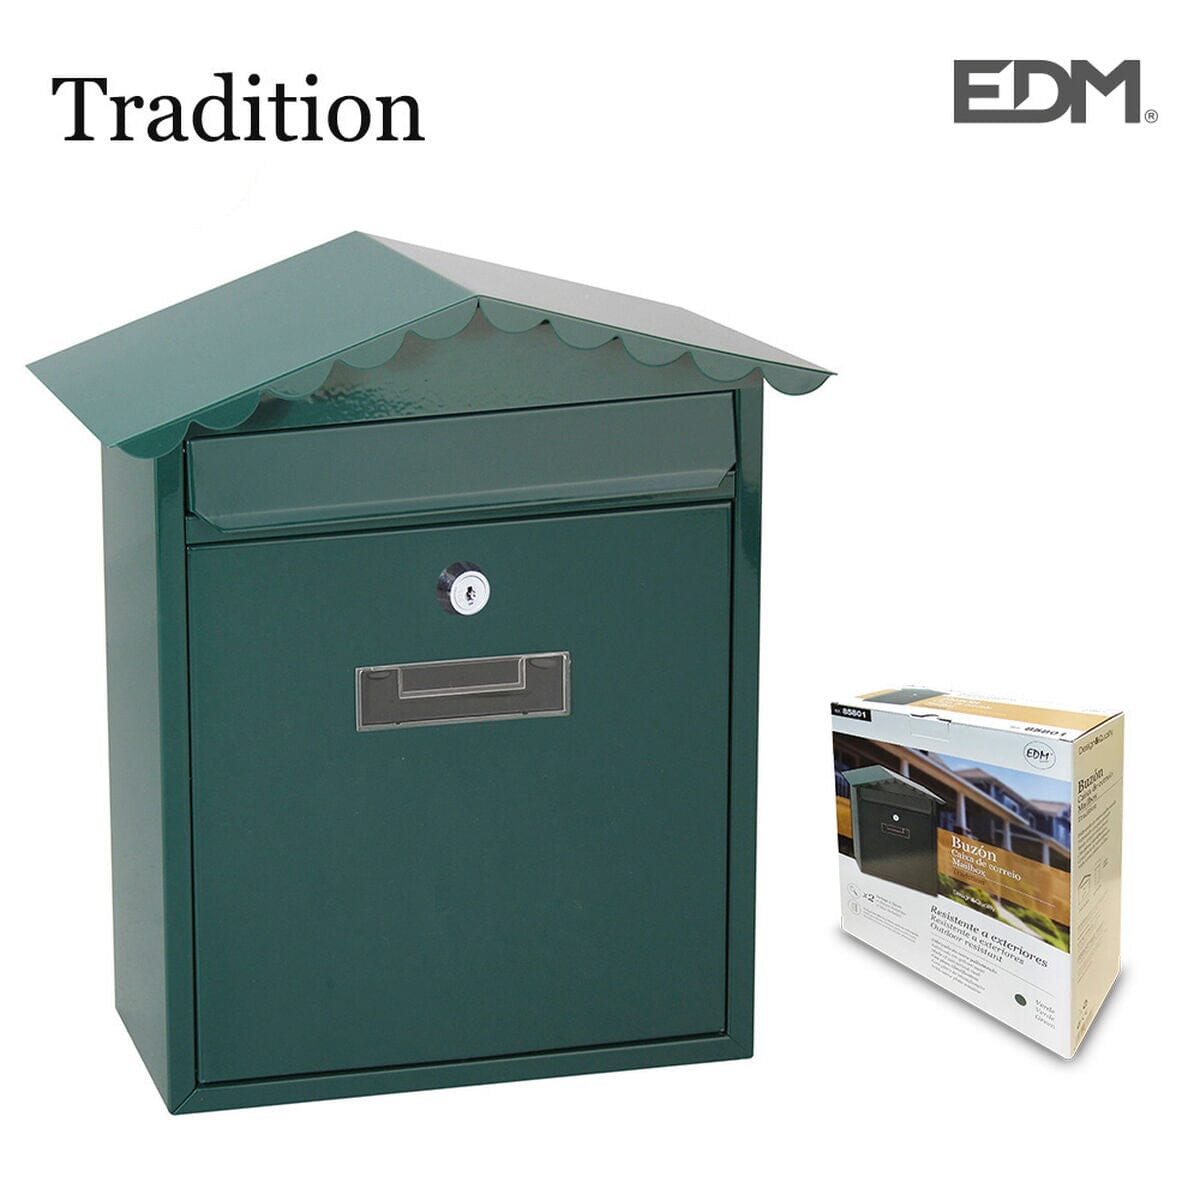 Briefkasten EDM Tradition Stahl grün (26 x 9 x 35,5 cm) - werkzeug-online24